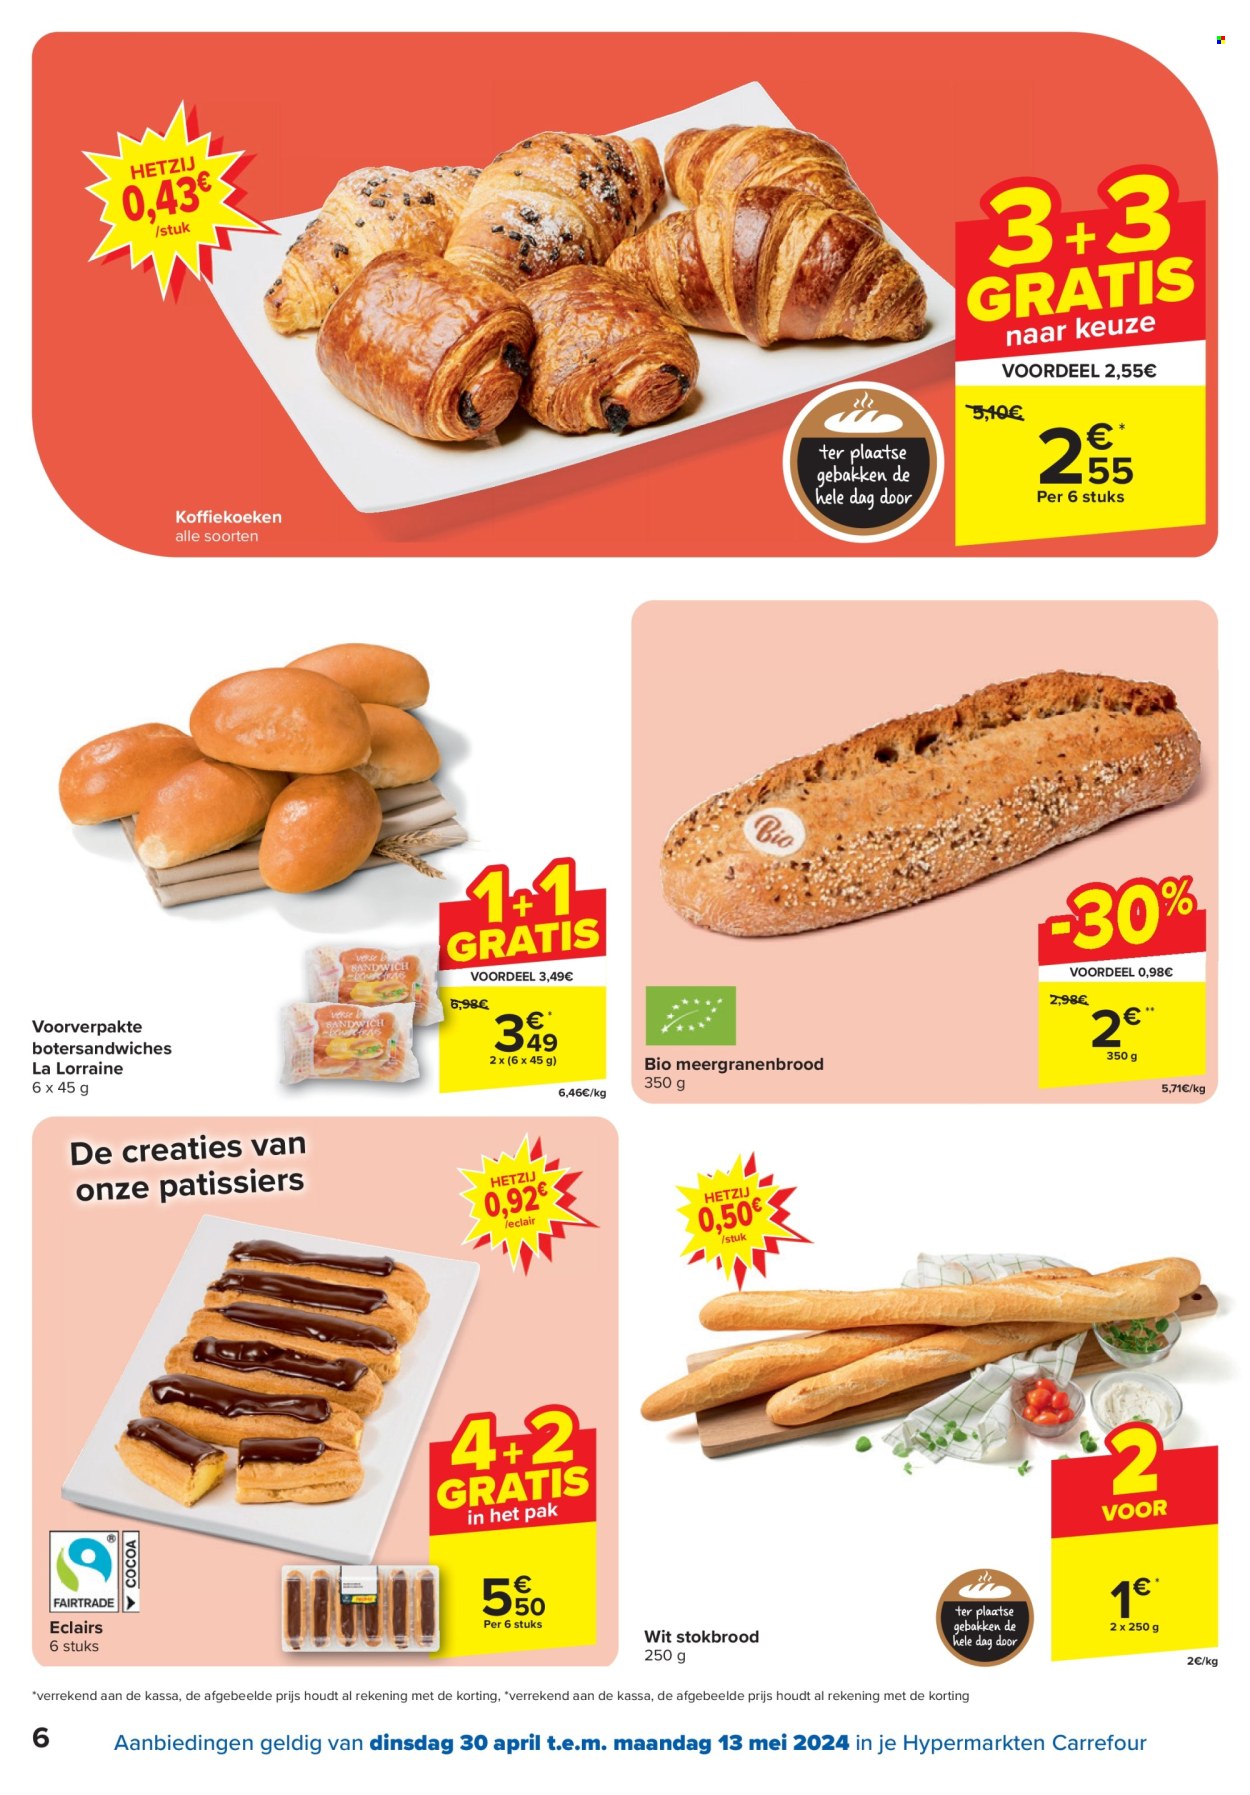 thumbnail - Catalogue Carrefour hypermarkt - 30/04/2024 - 13/05/2024 - Produits soldés - éclair, sandwich. Page 6.